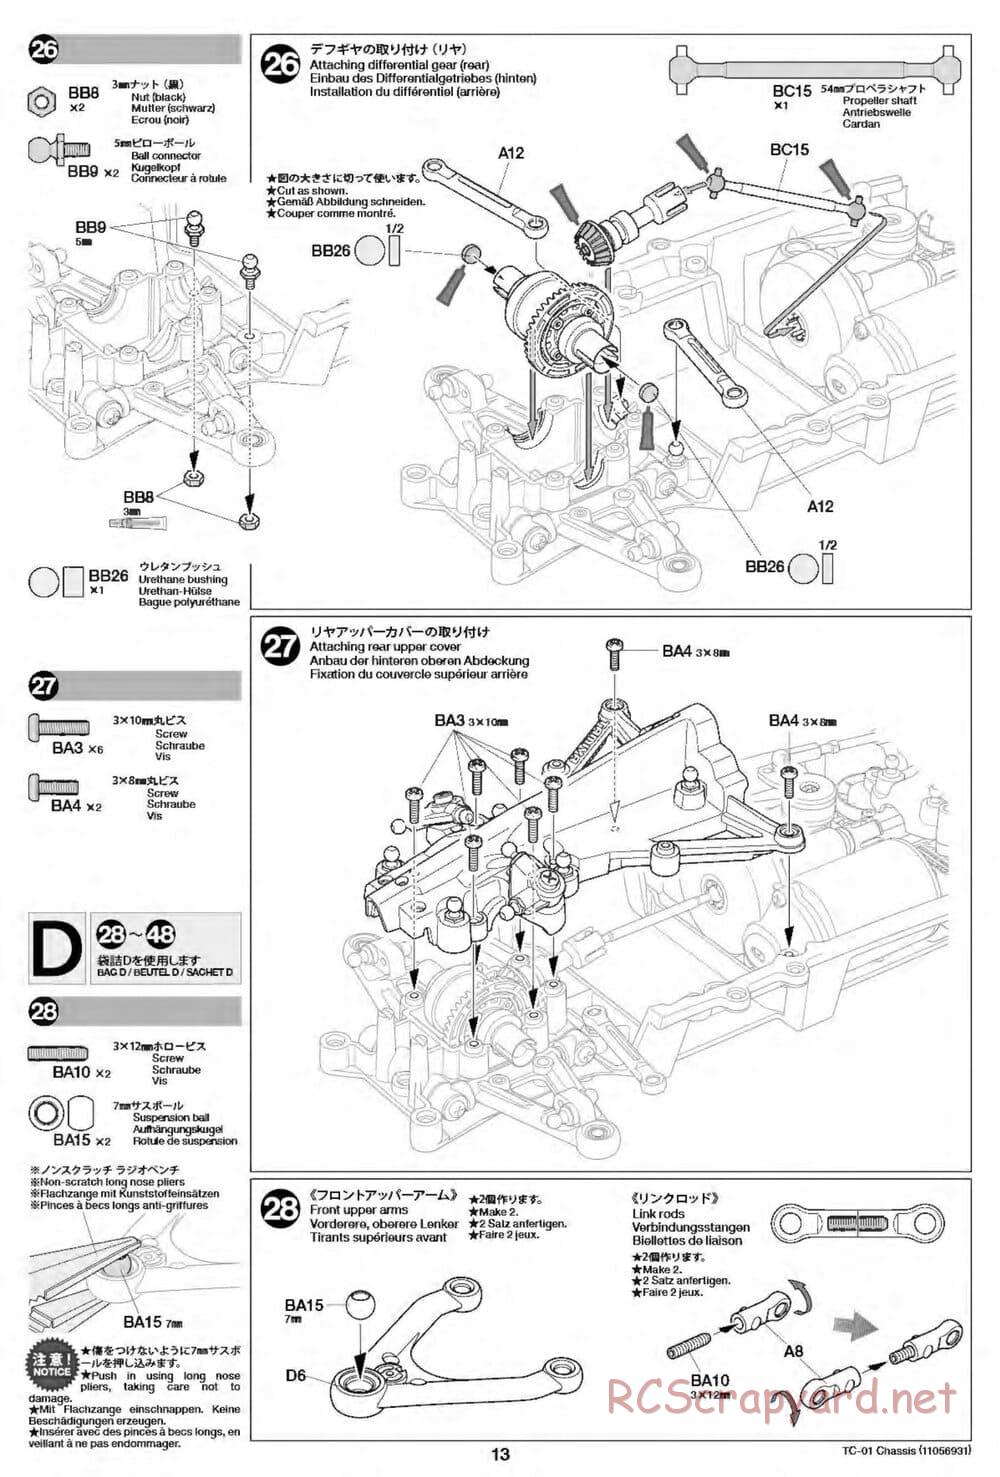 Tamiya - TC-01 Chassis - Manual - Page 13